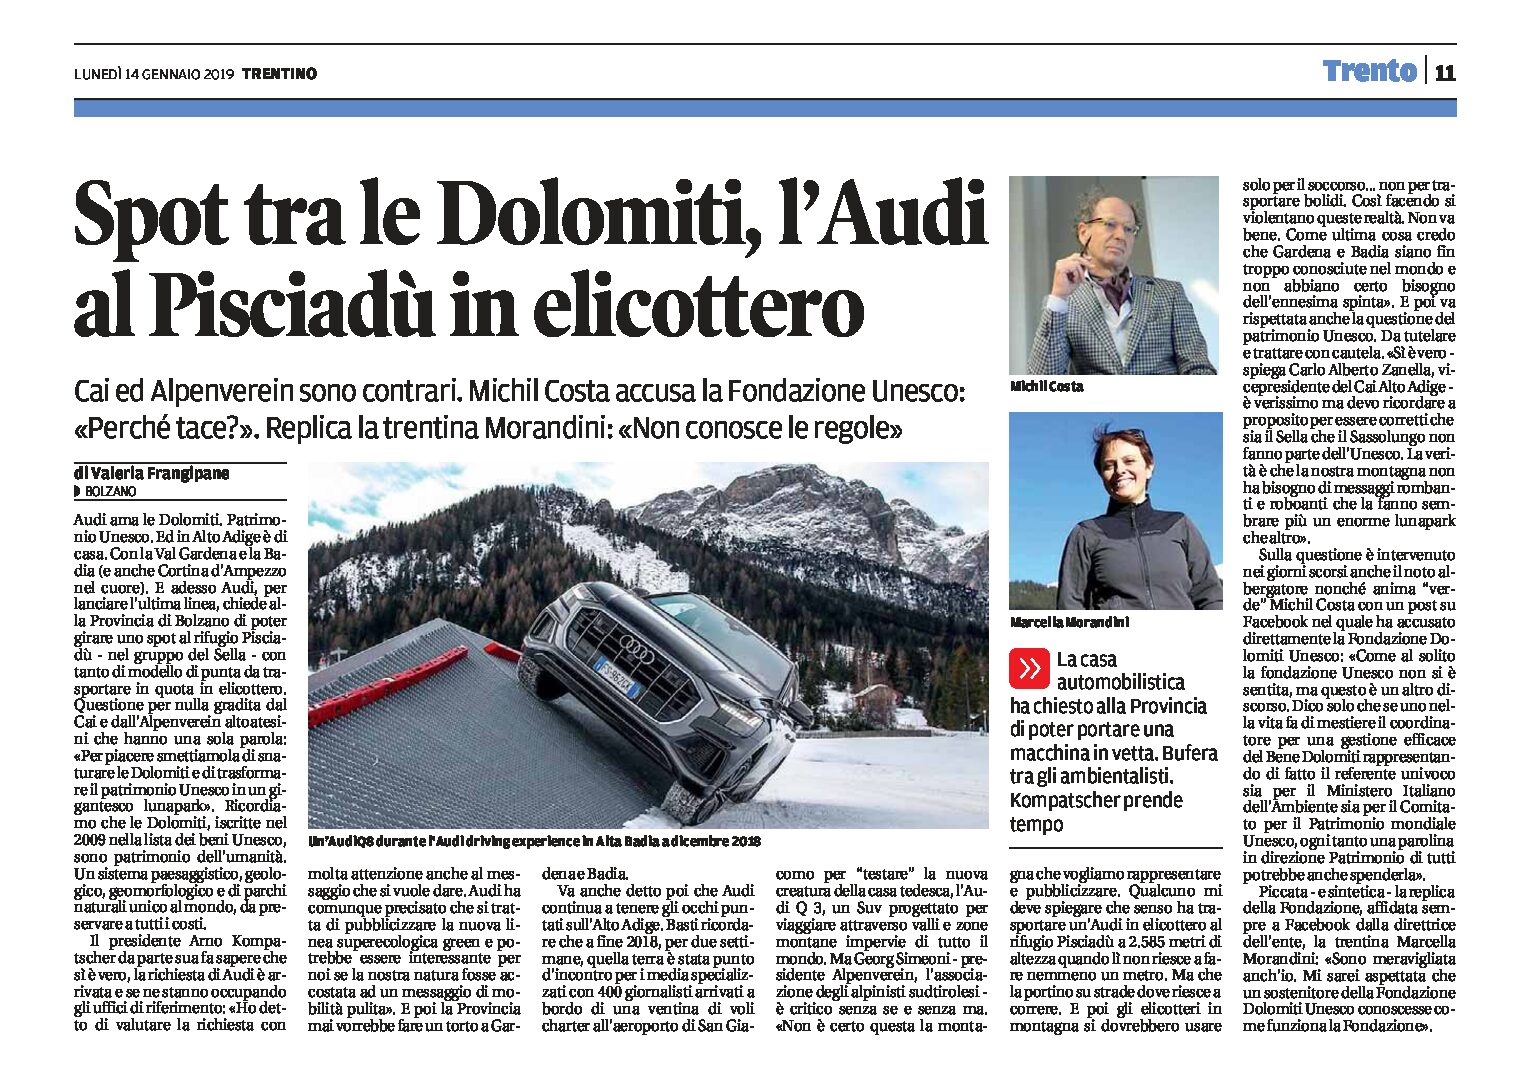 Dolomiti, patrimonio Unesco: uno spot per l’Audi, trasportata al Pisciadù in elicottero